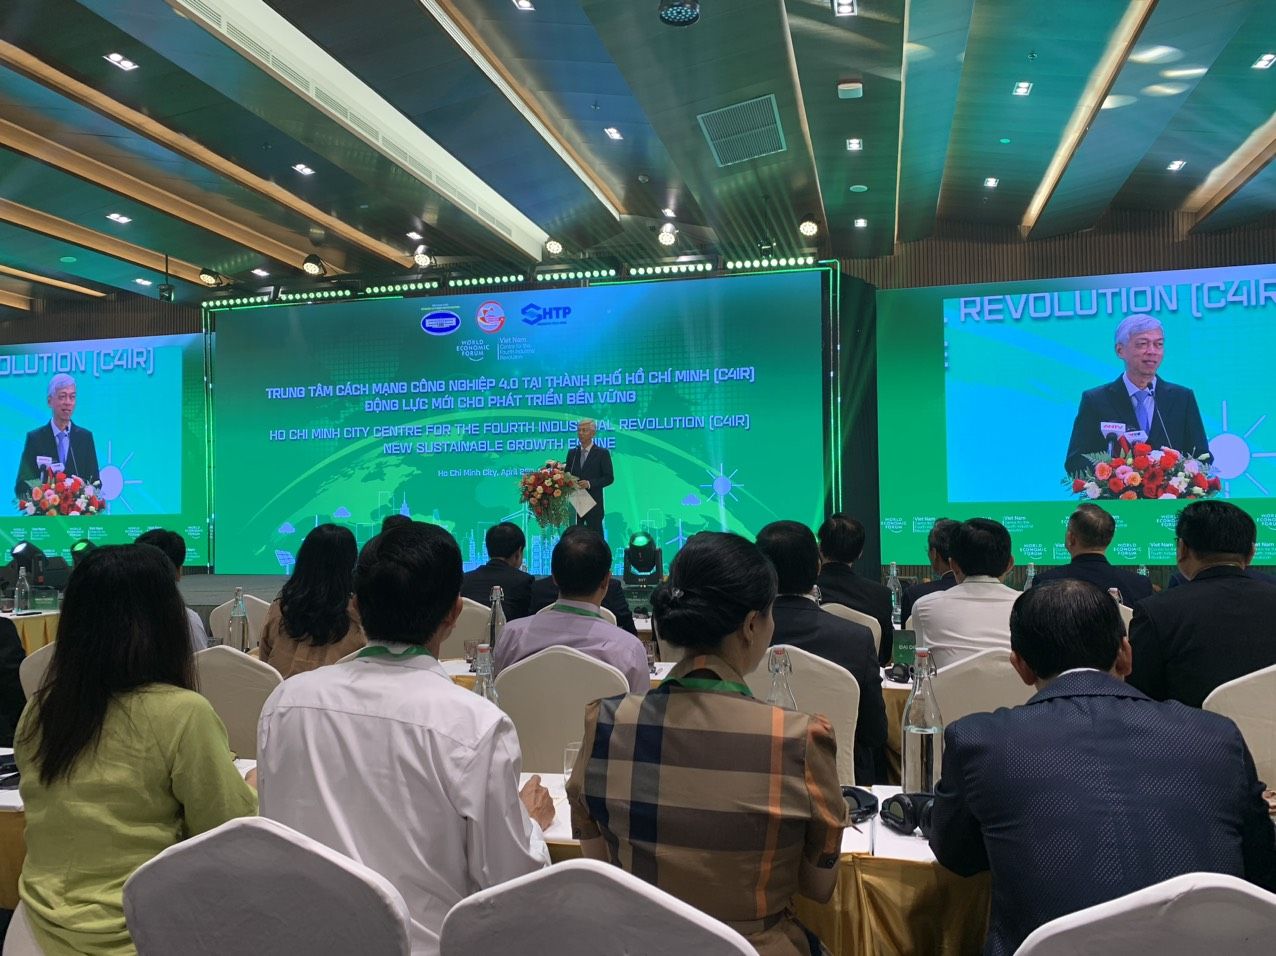 Trung tâm Cách mạng Công nghiệp 4.0 đầu tiên của Việt Nam đặt tại Khu Công nghệ cao TPHCM